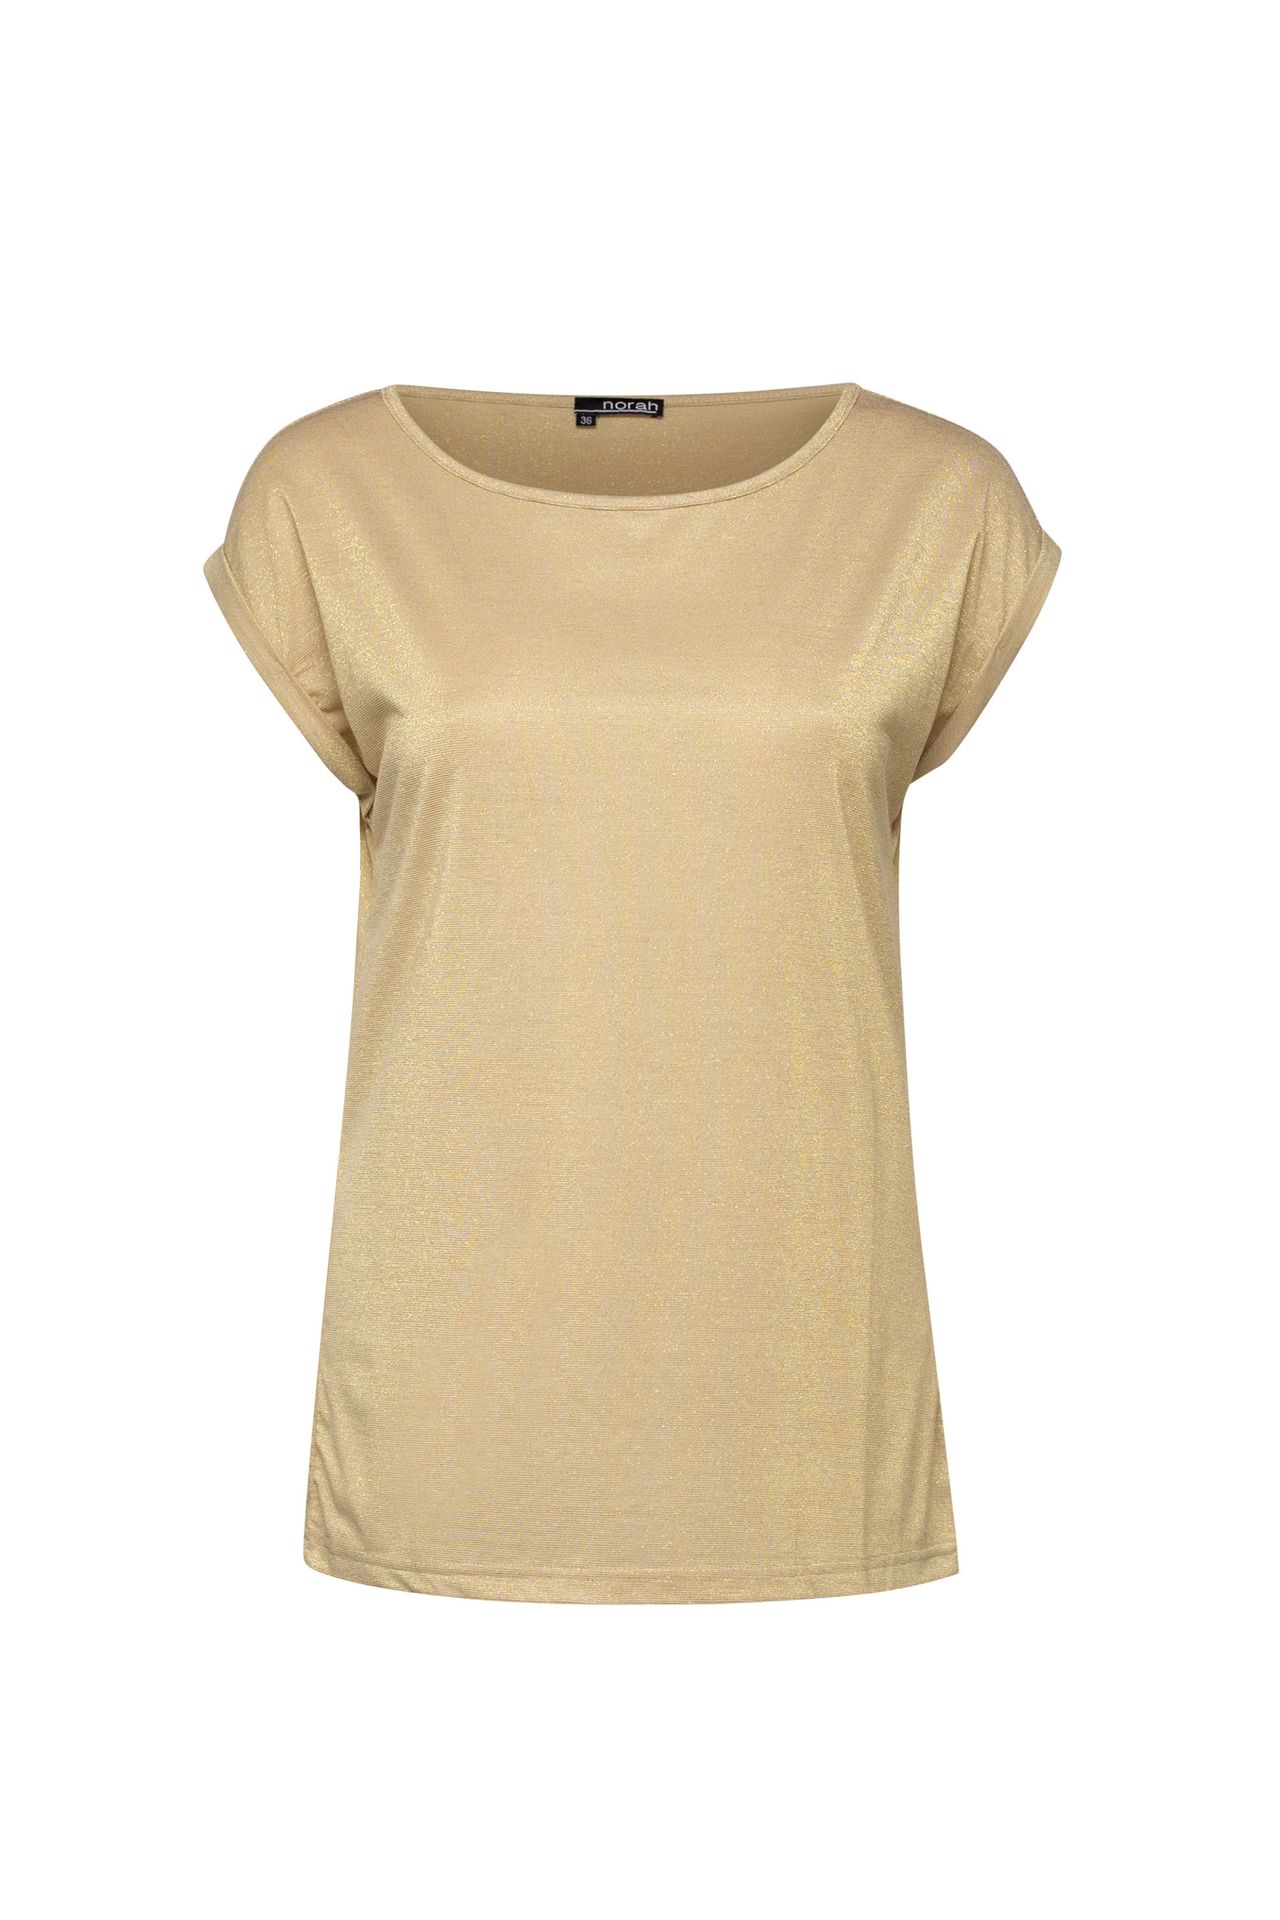 Norah Goud shirt sand 210052-110